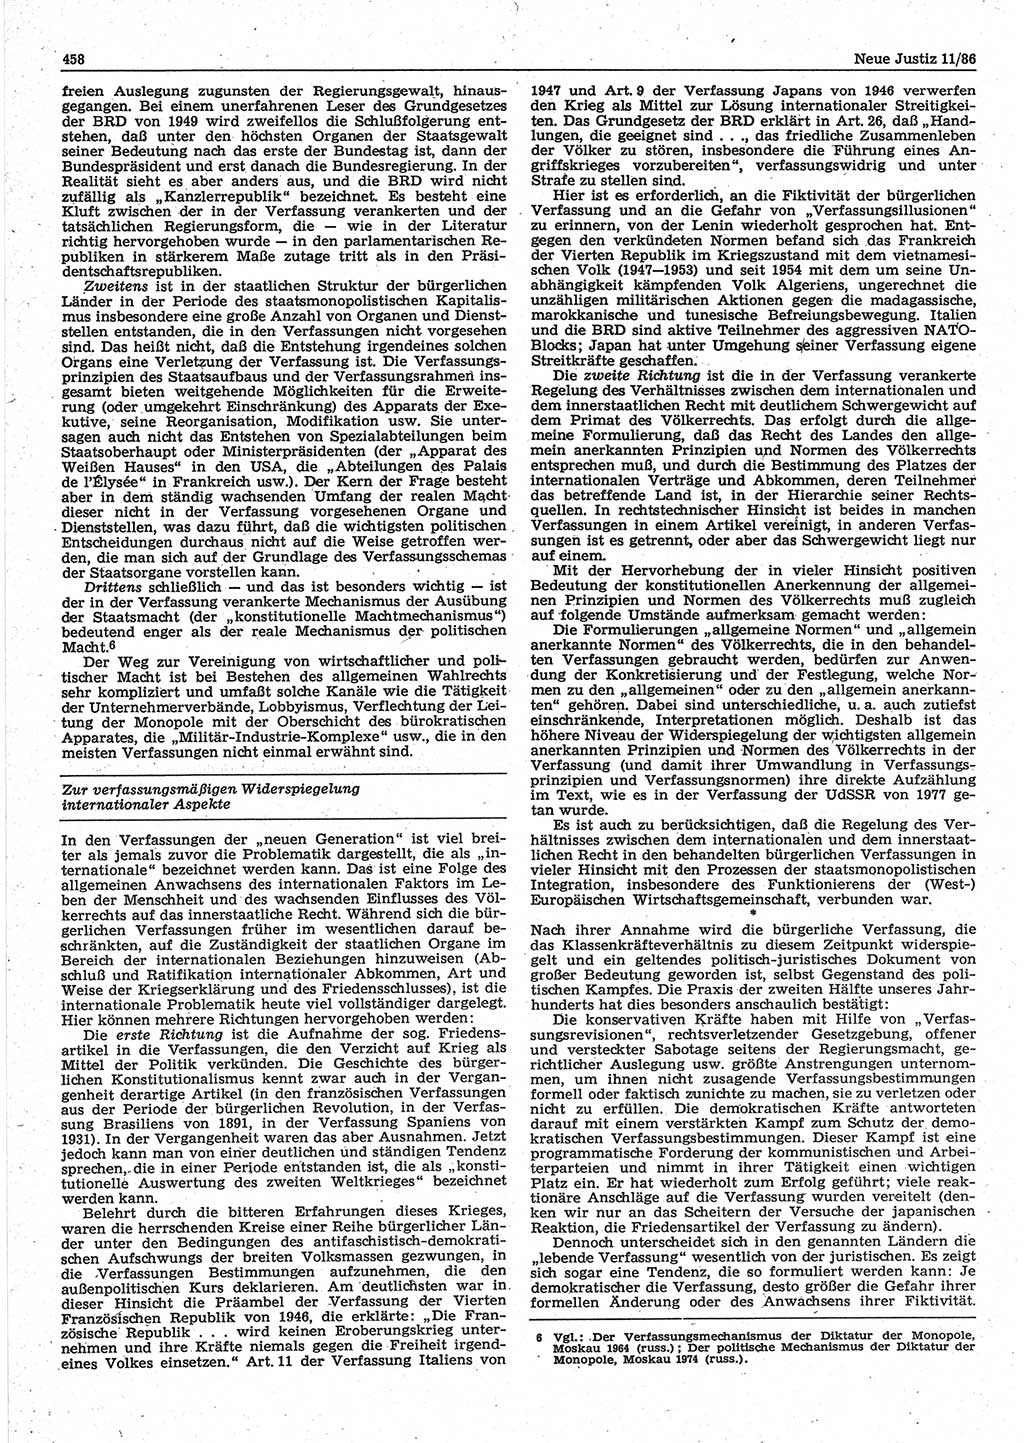 Neue Justiz (NJ), Zeitschrift für sozialistisches Recht und Gesetzlichkeit [Deutsche Demokratische Republik (DDR)], 40. Jahrgang 1986, Seite 458 (NJ DDR 1986, S. 458)